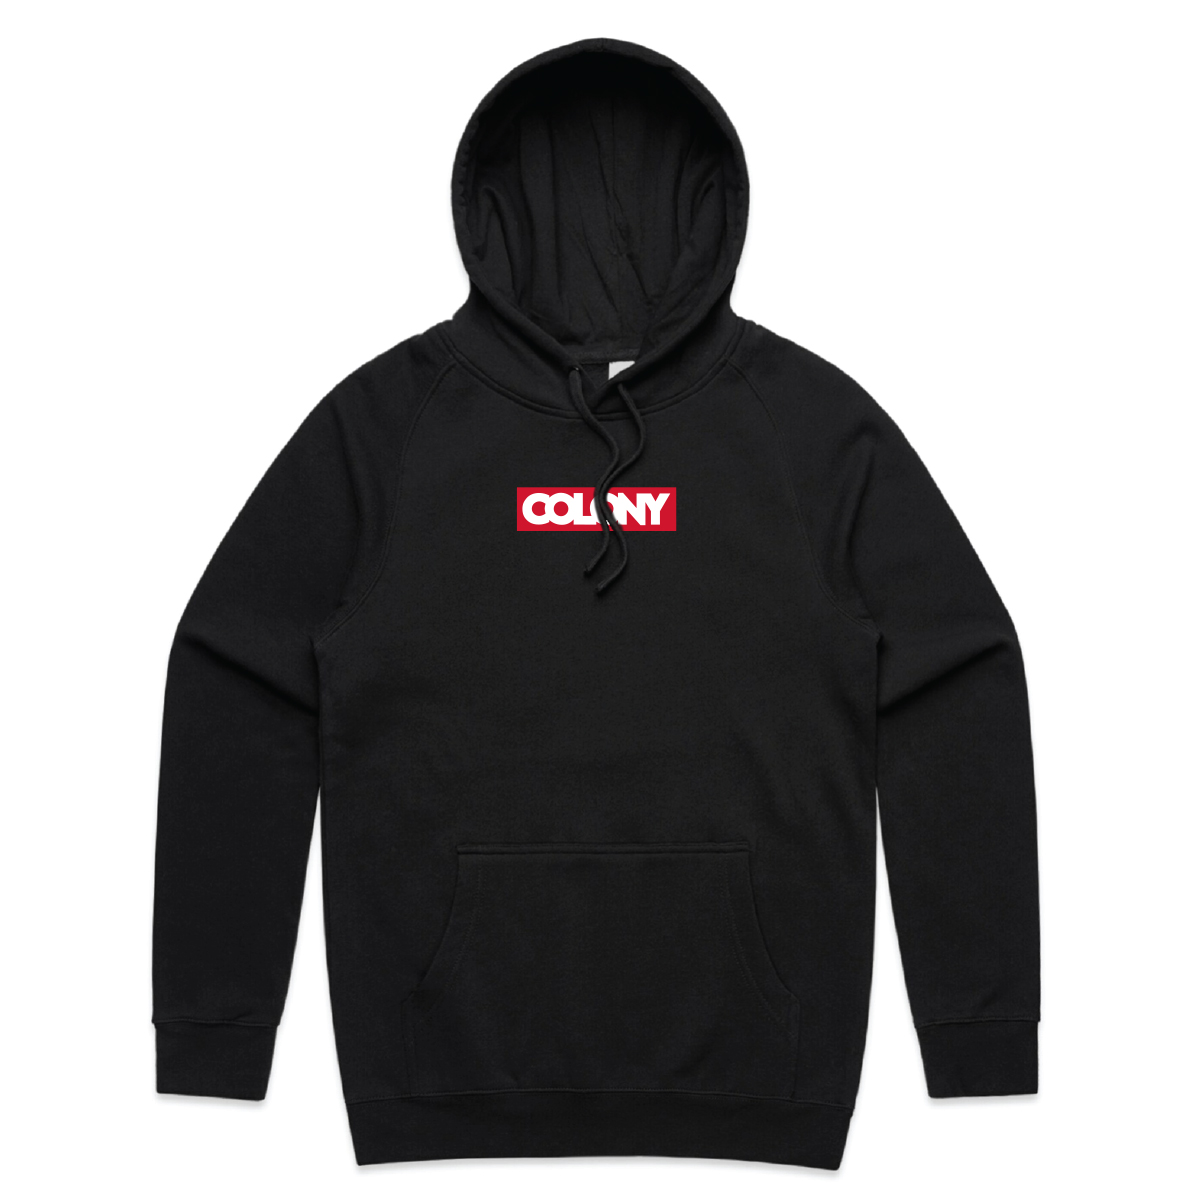 colony bmx hoodies